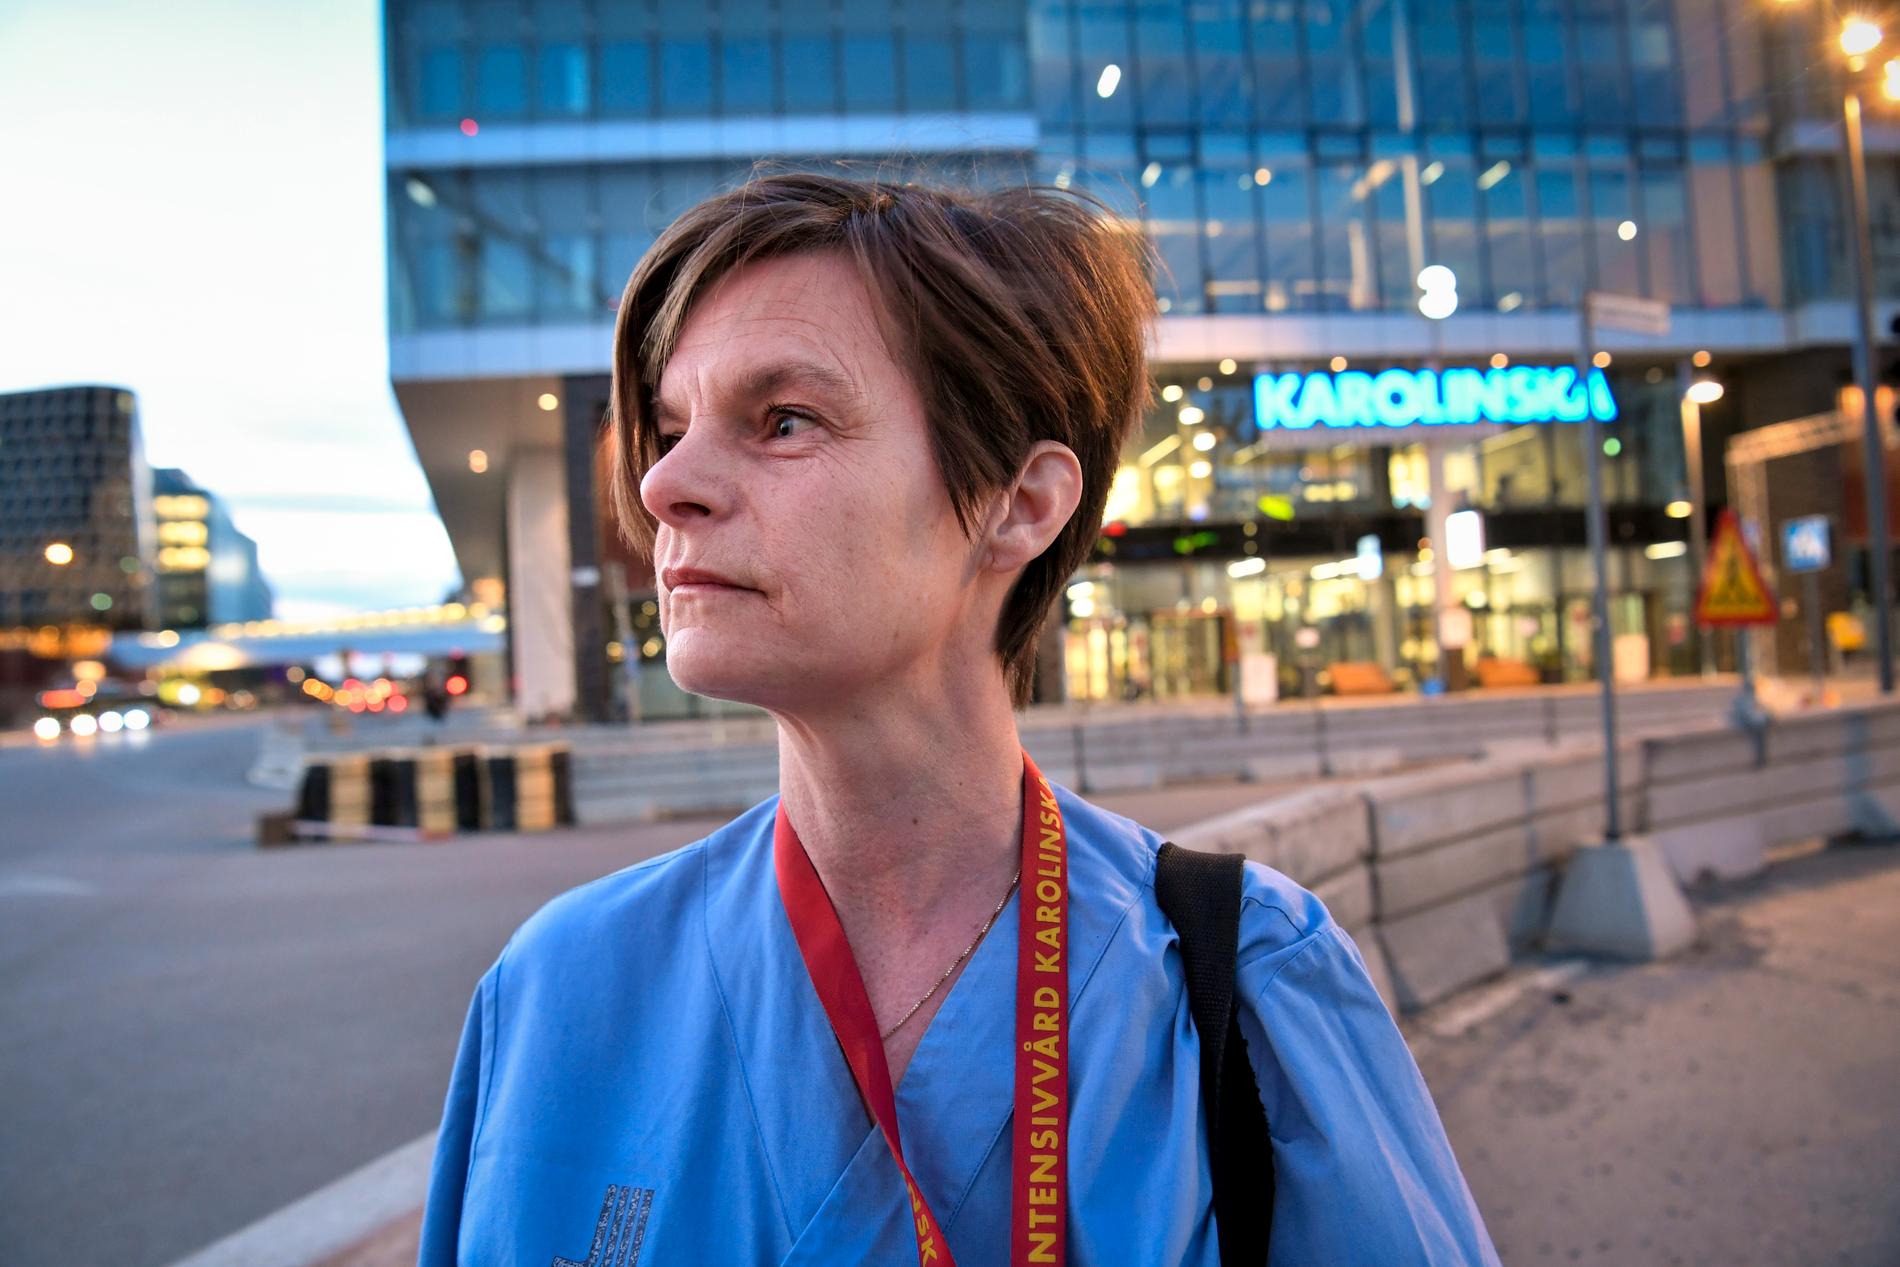 Stämningen är bra bland dem som arbetar inom intensivvården, säger Anna Helmerson, intensivvårdssjuksköterska vid Karolinska universitetssjukhuset i Solna.